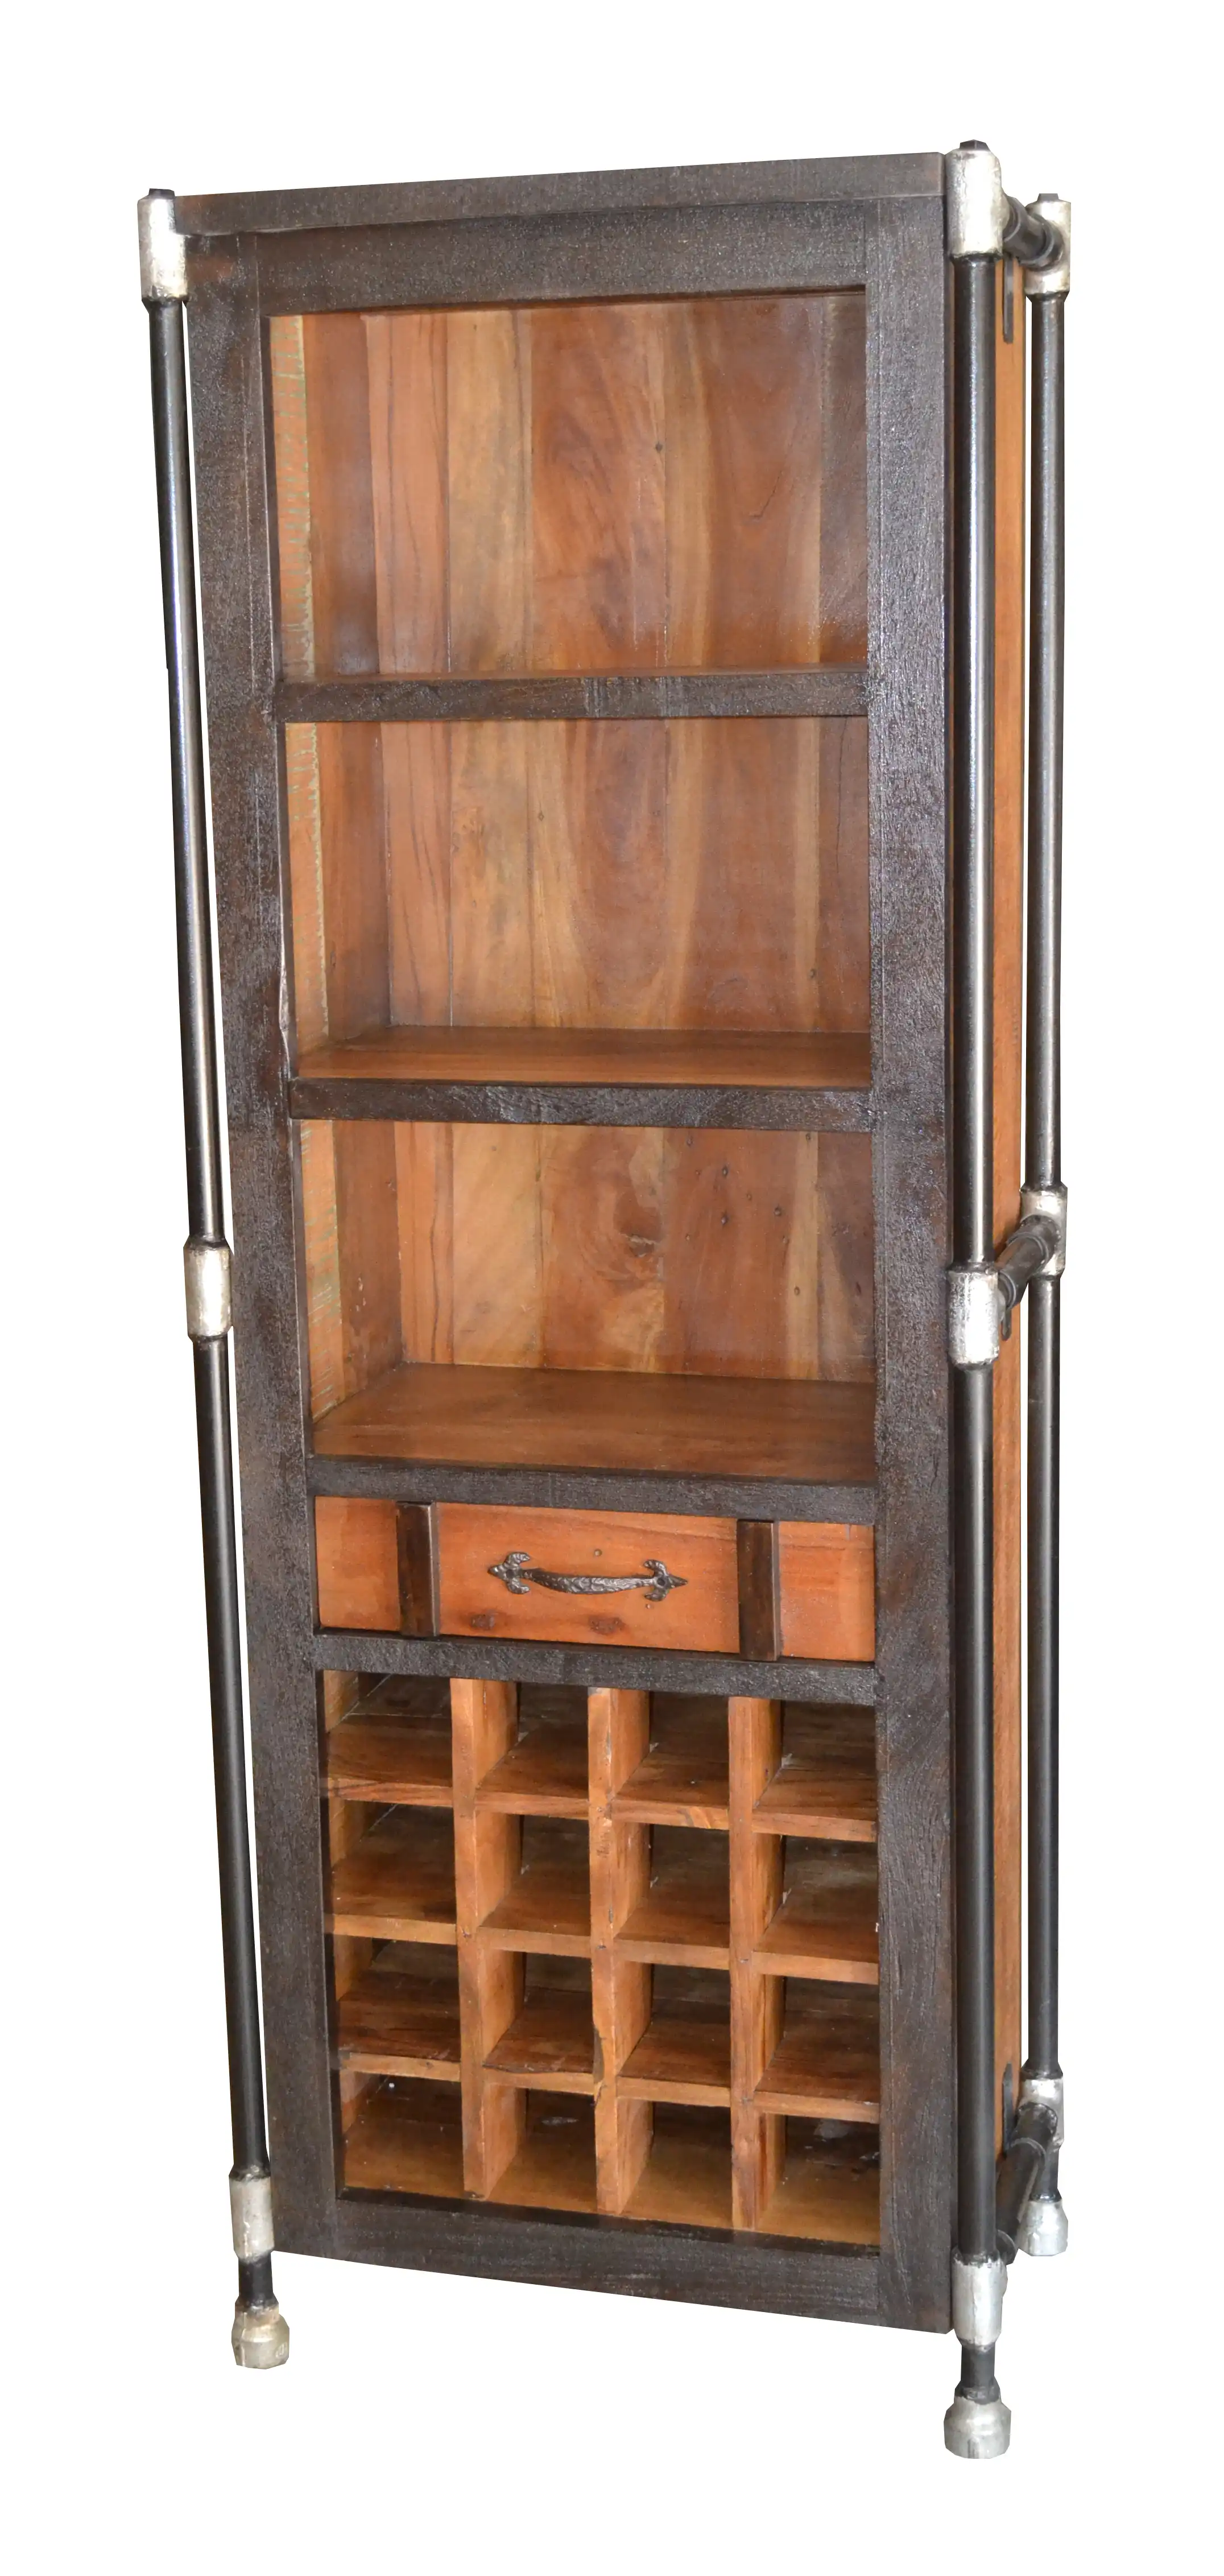 Antique look Tubeline Cabinet with 1 Drawer & Wine Bottle Holder - popular handicrafts